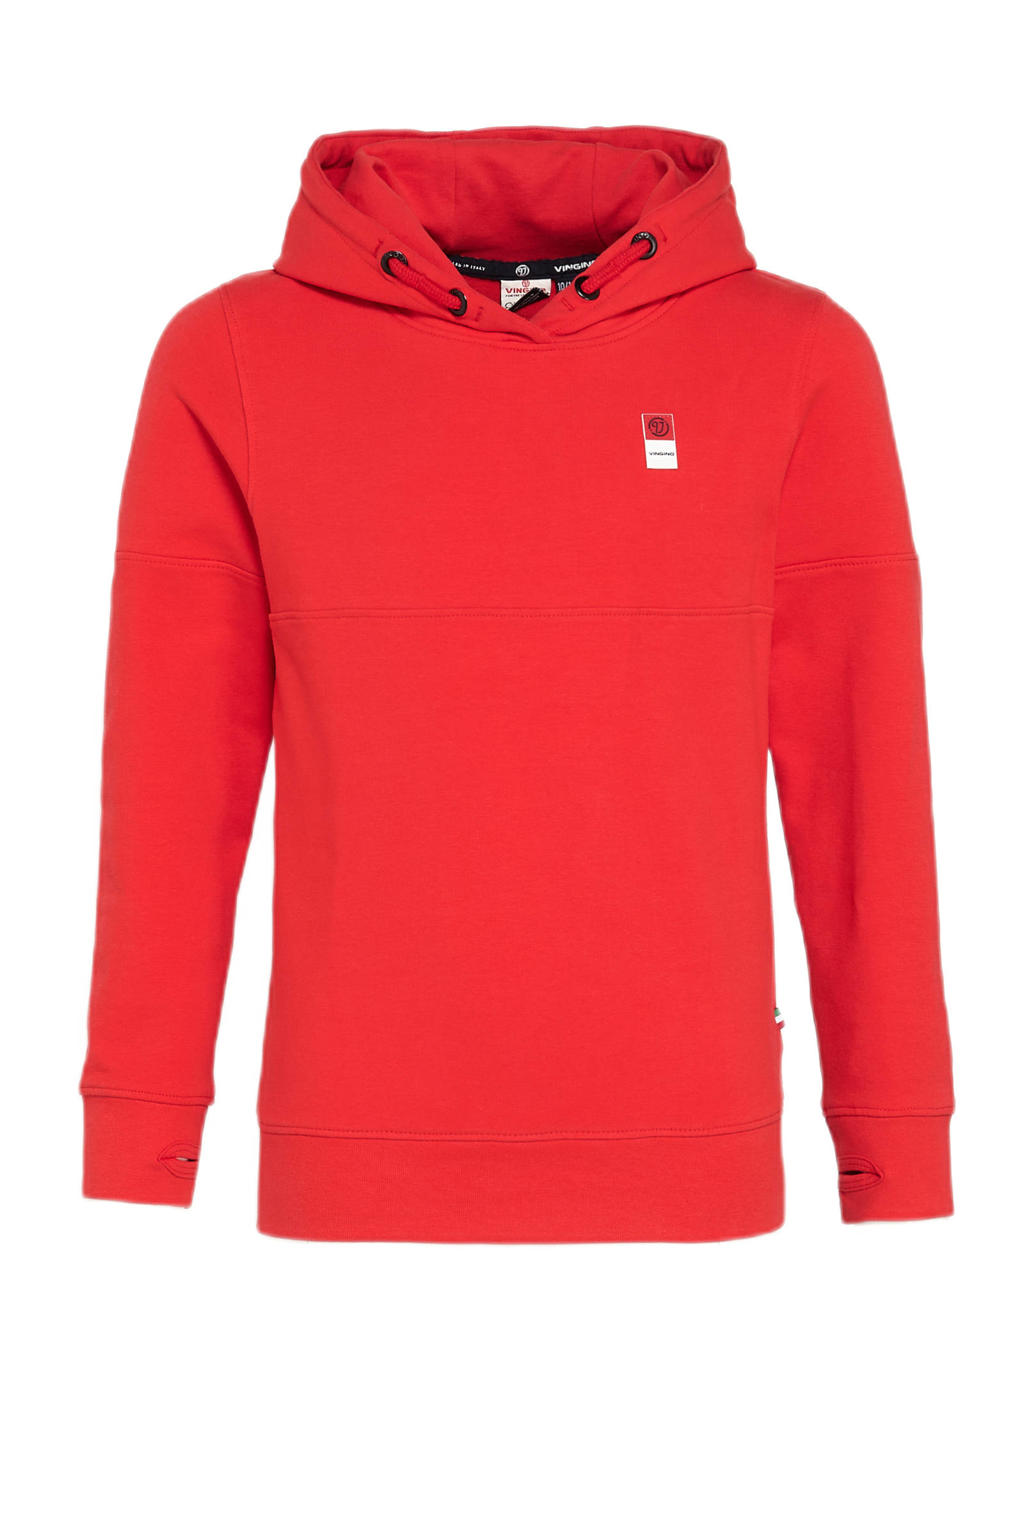 Rode jongens Vingino Essentials hoodie van sweat materiaal met lange mouwen en capuchon